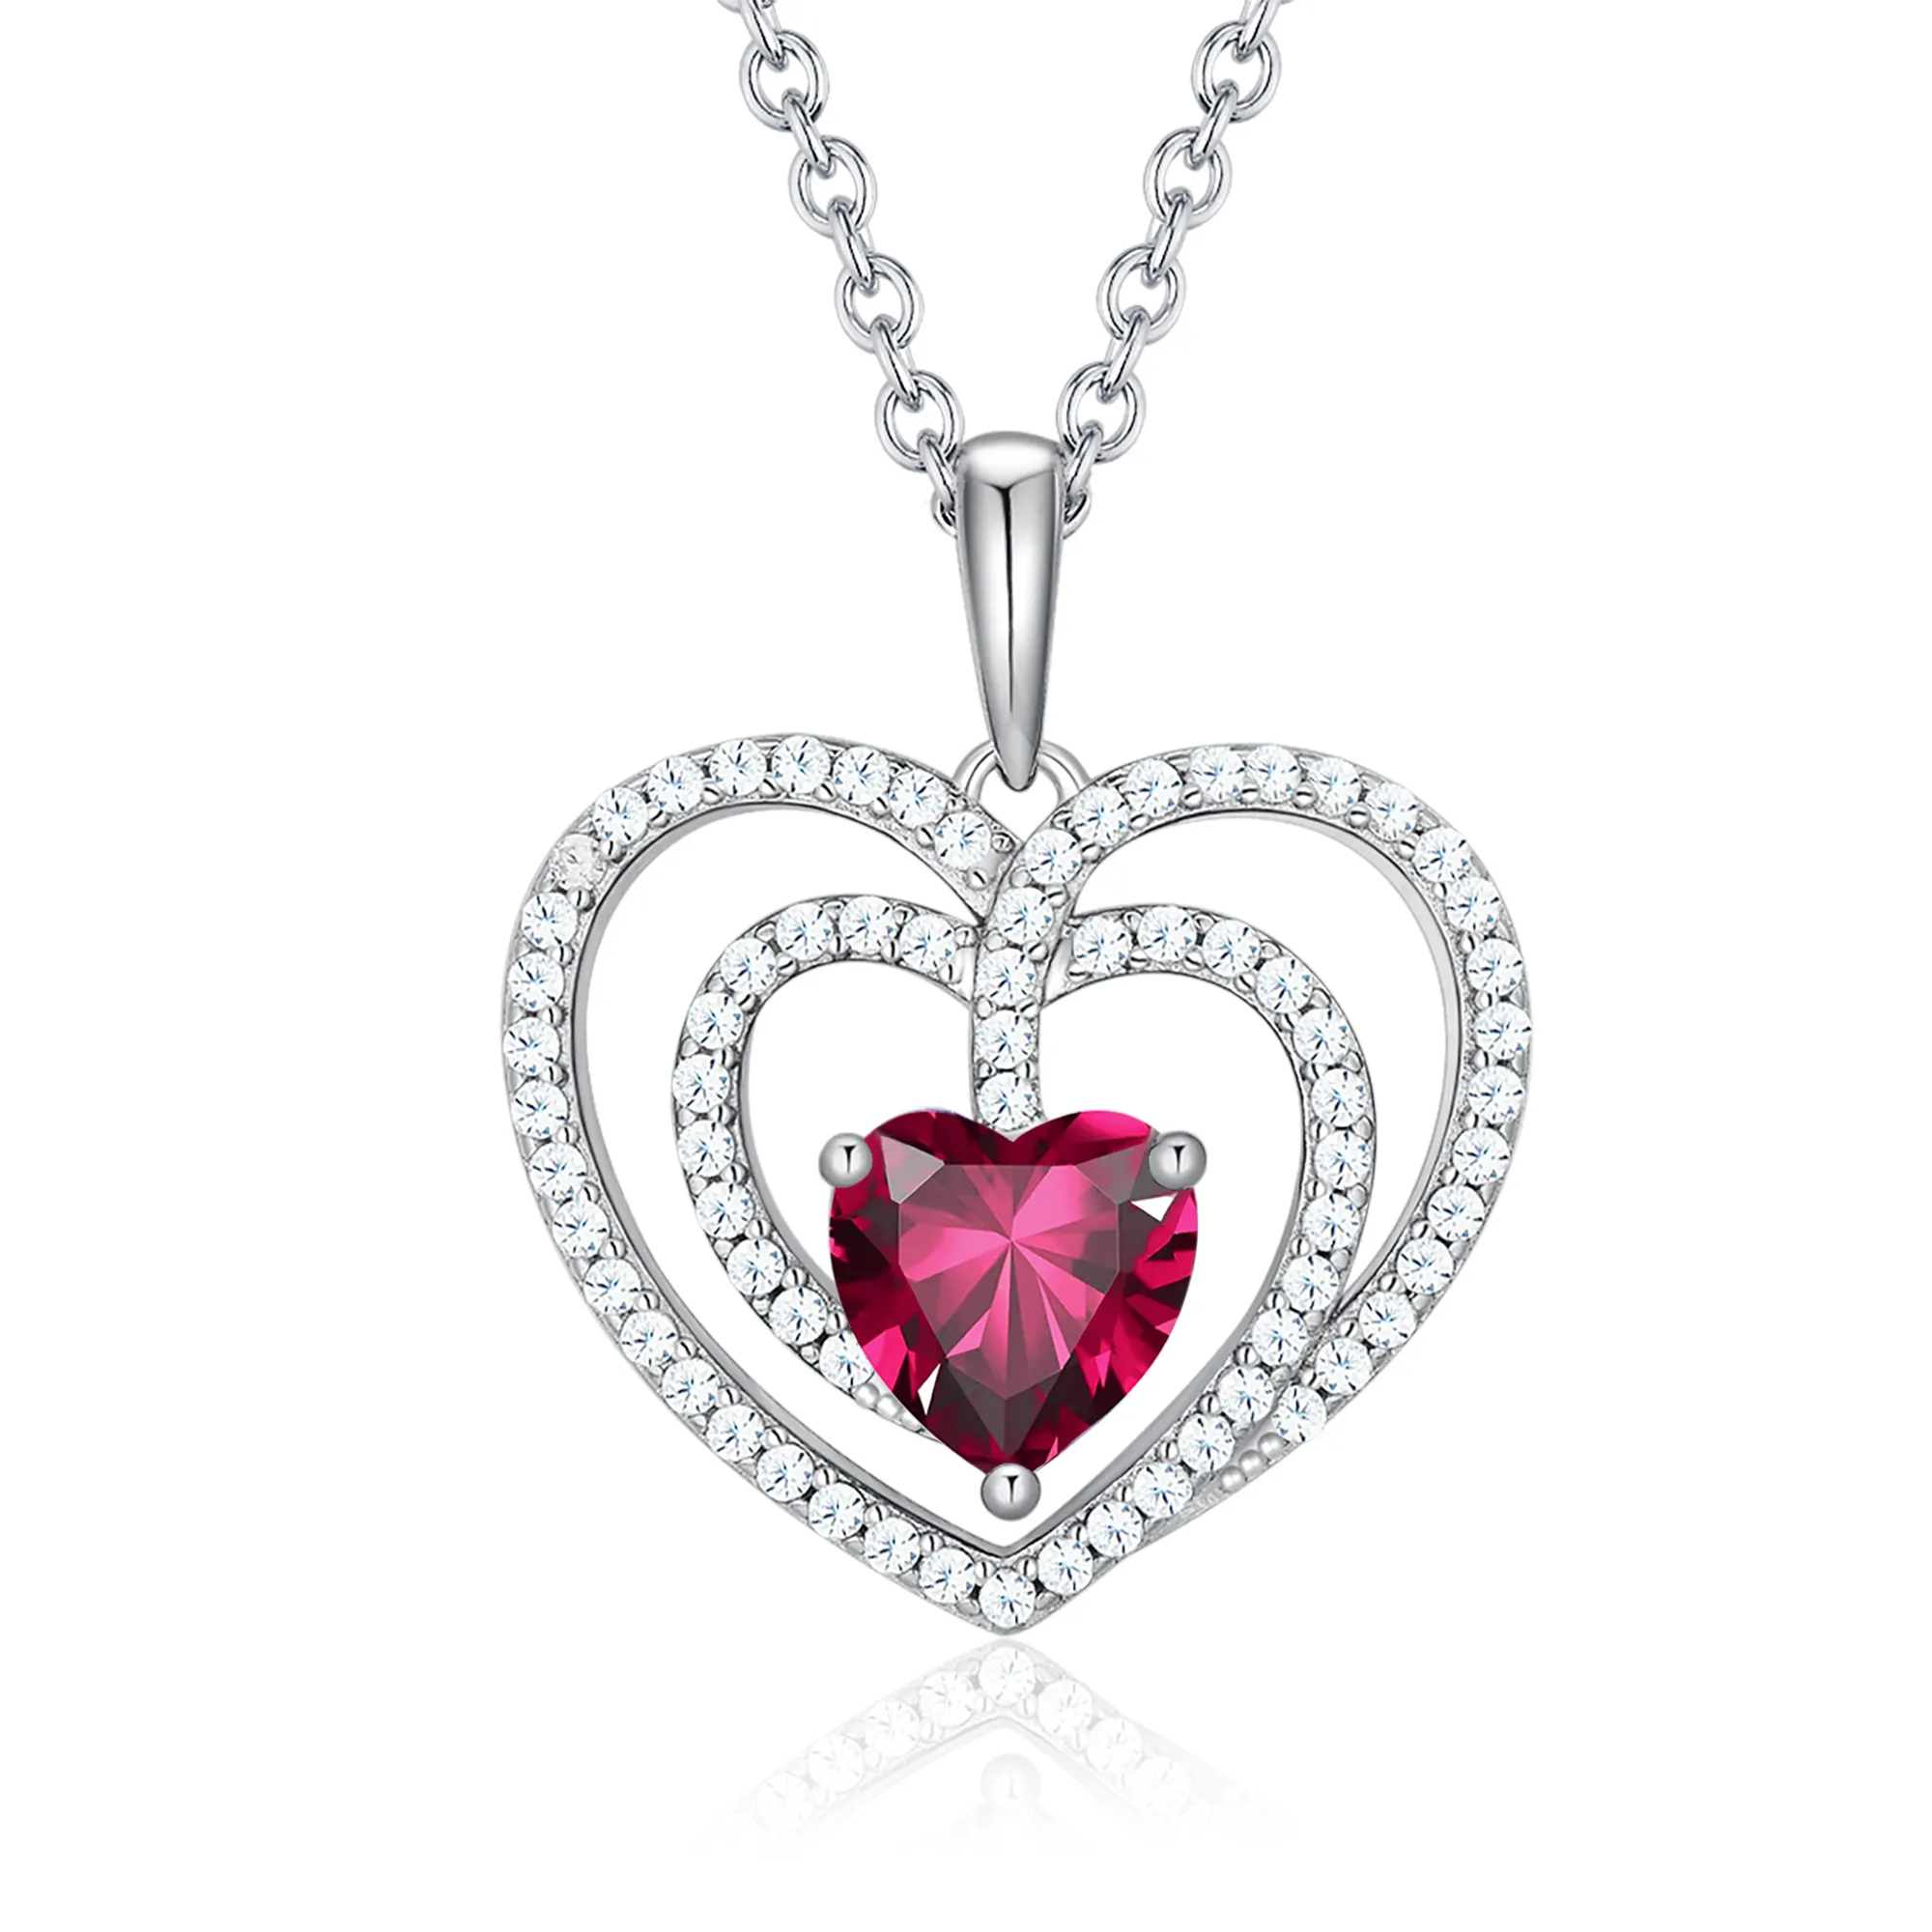 Regalo di san valentino di moda collane con ciondolo a cuore ad incastro con rubino grande in argento Sterling 925 per la fidanzata